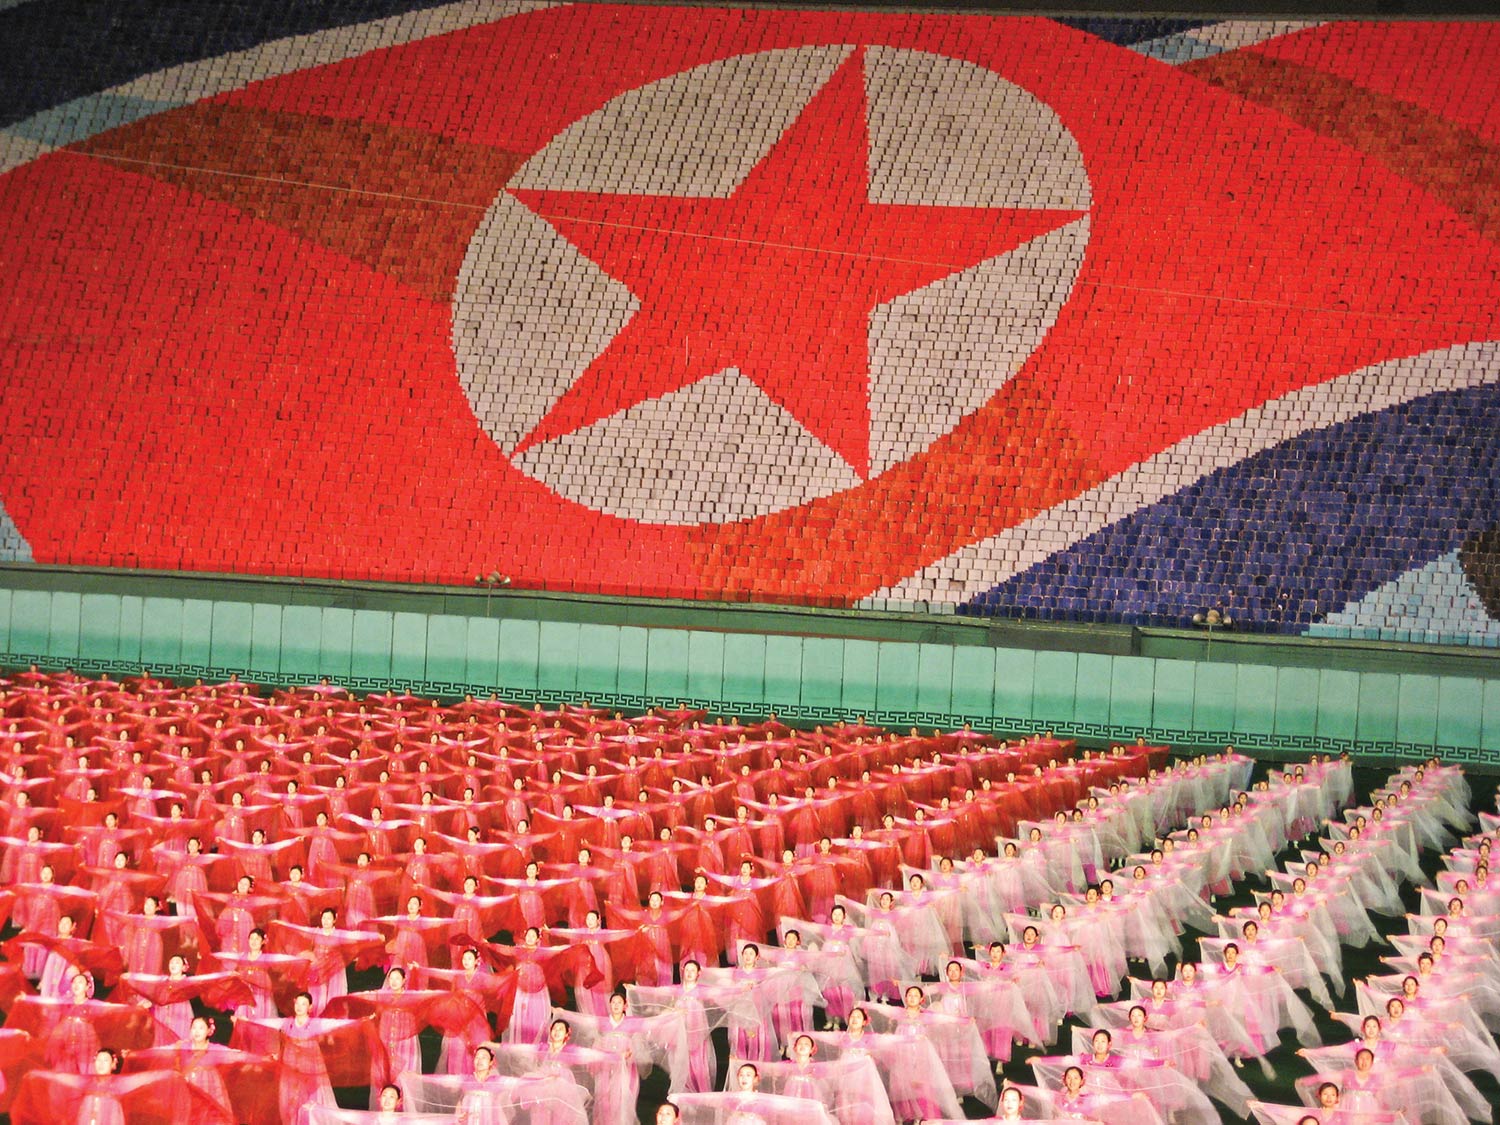 North Korean children's performance